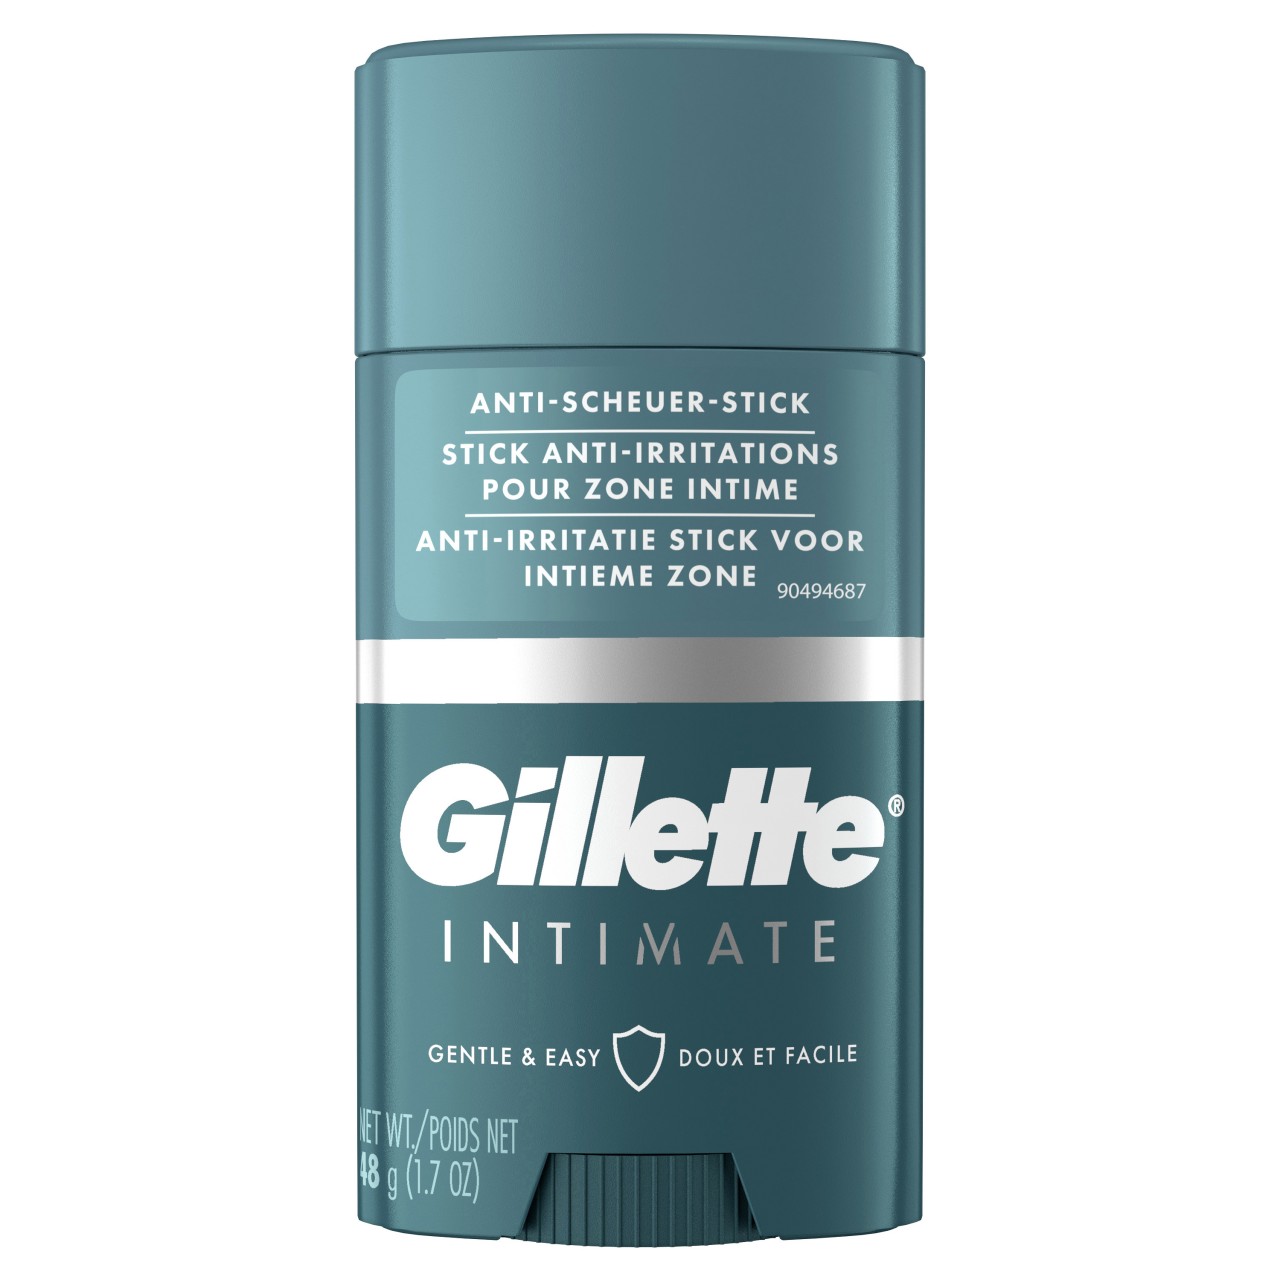 Gillette - Intimate Anti-Scheuer Stick für den Intimbereich von Gillette